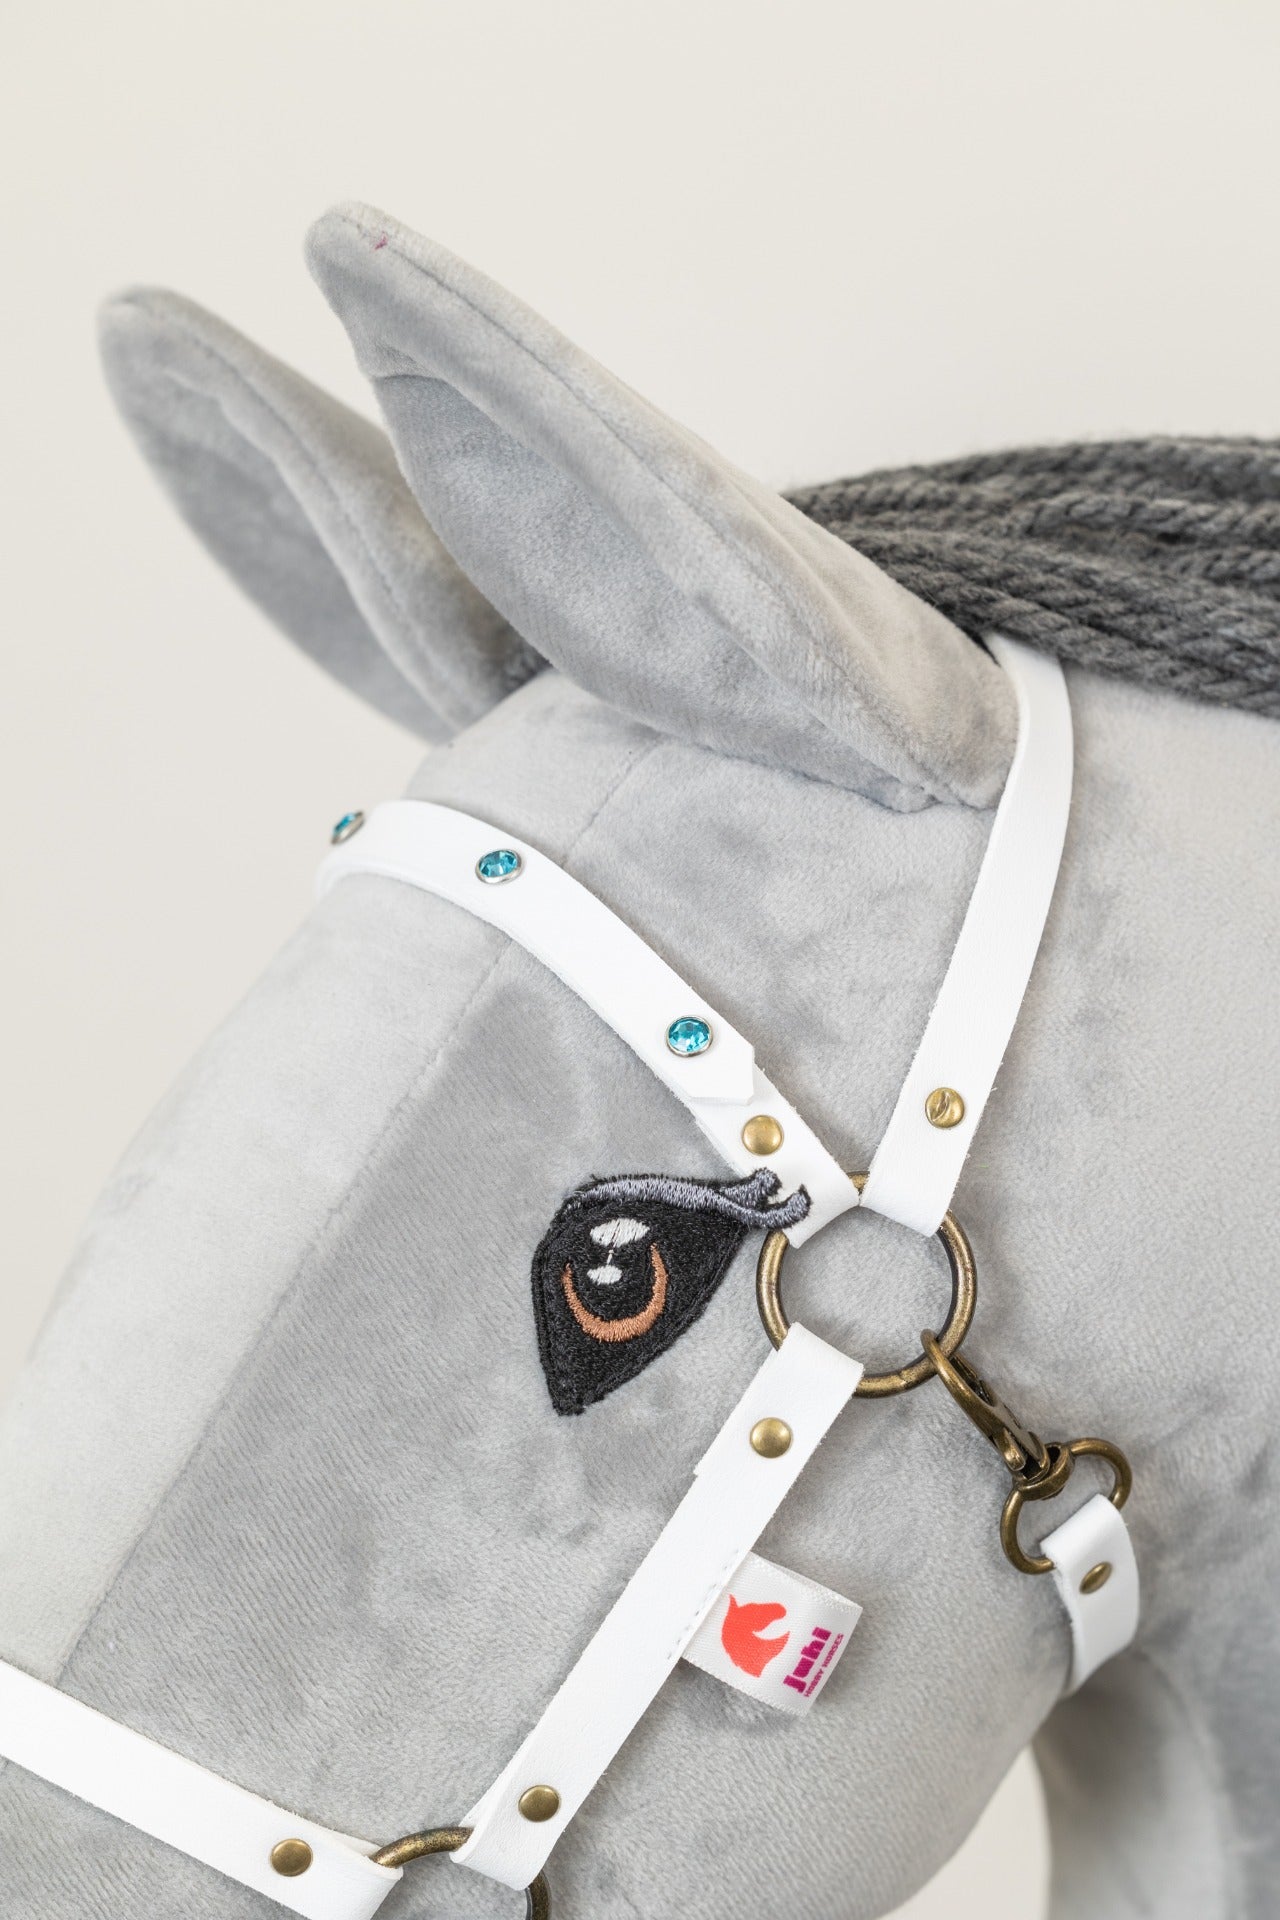 Ohlávka Crystal bílá - Mosaz - Dospělý kůň